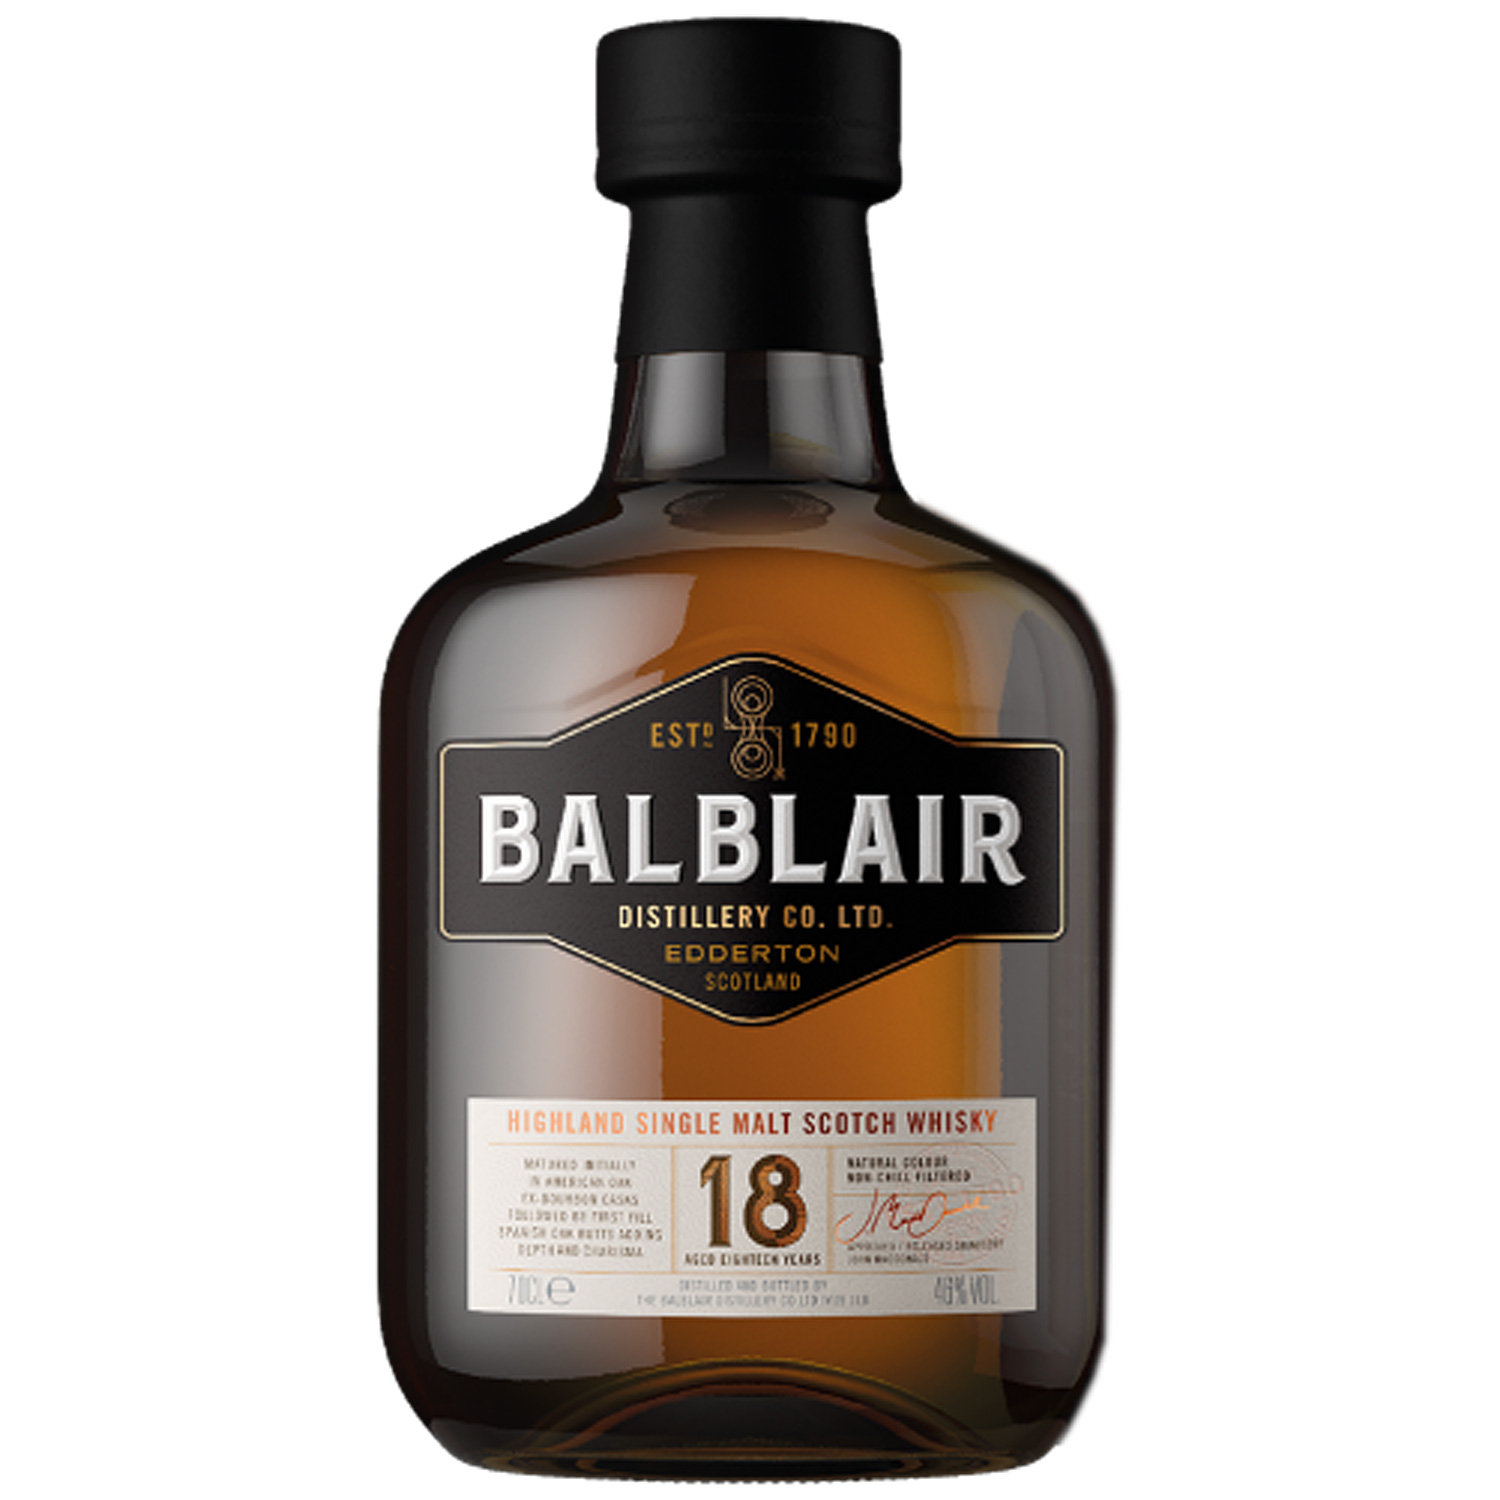 Balblair Single Malt Scotch Whisky 18YO